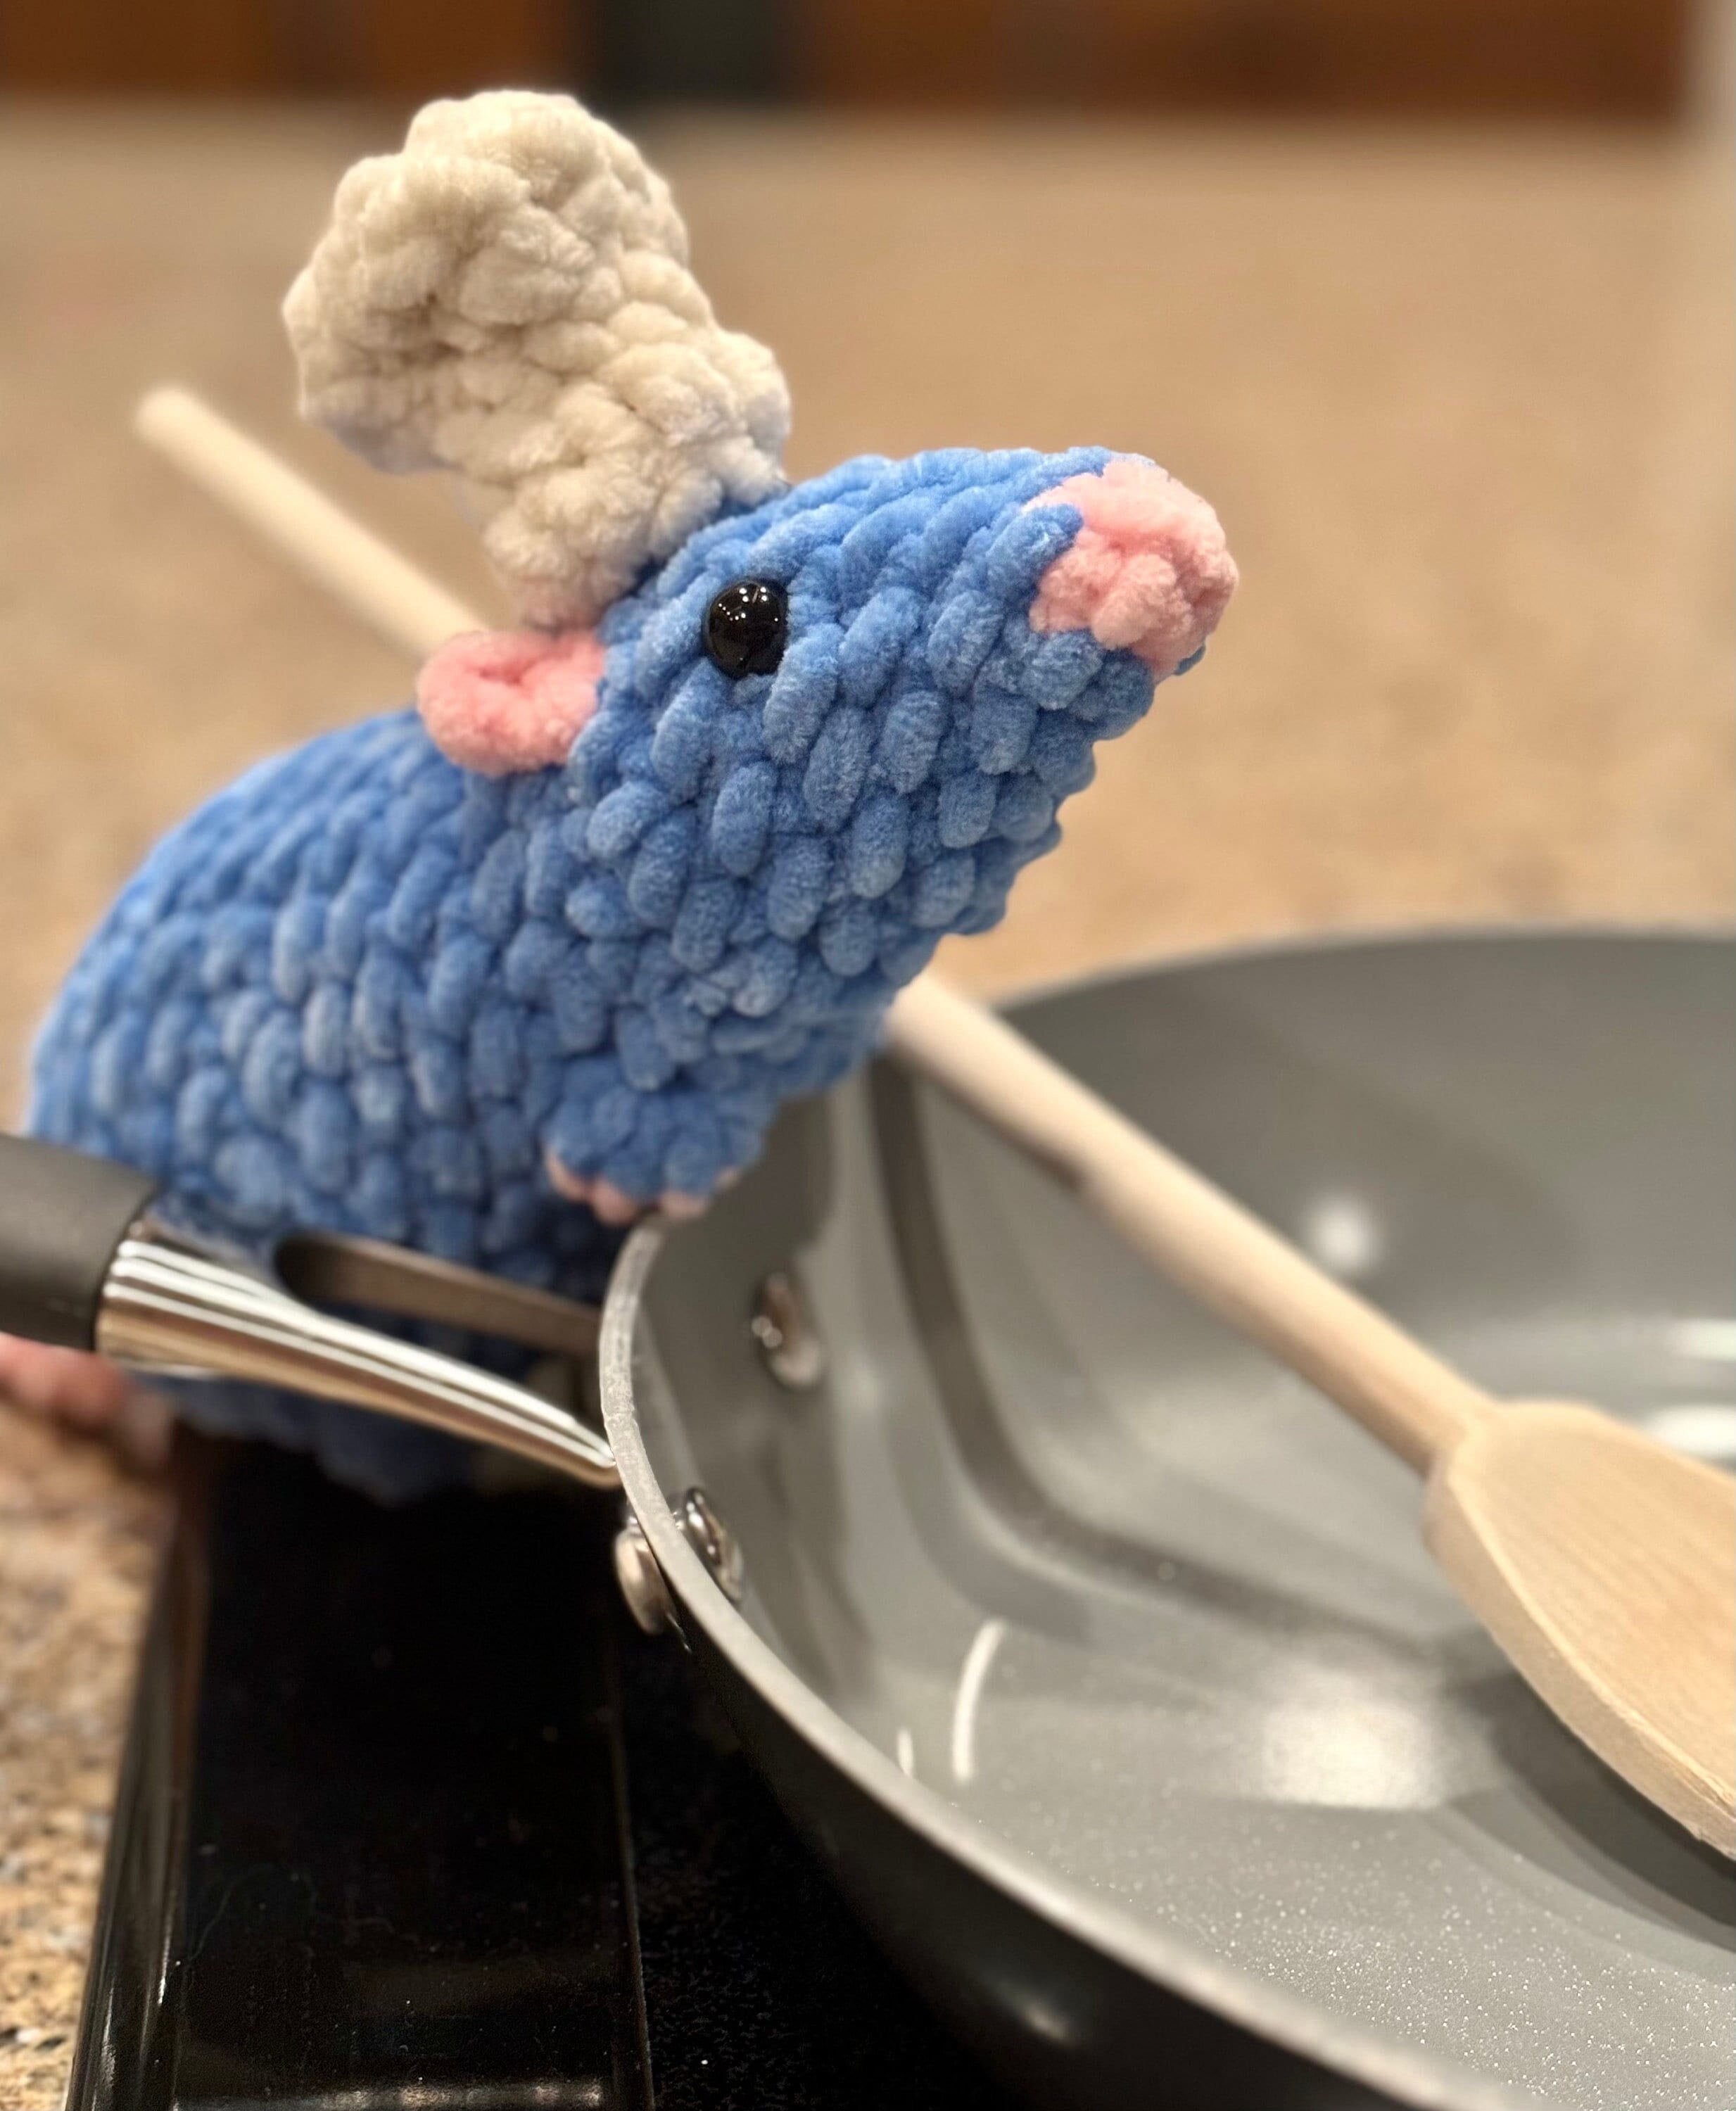 Disney Ratatouille Rémi le rat Peluche géante 60 cm